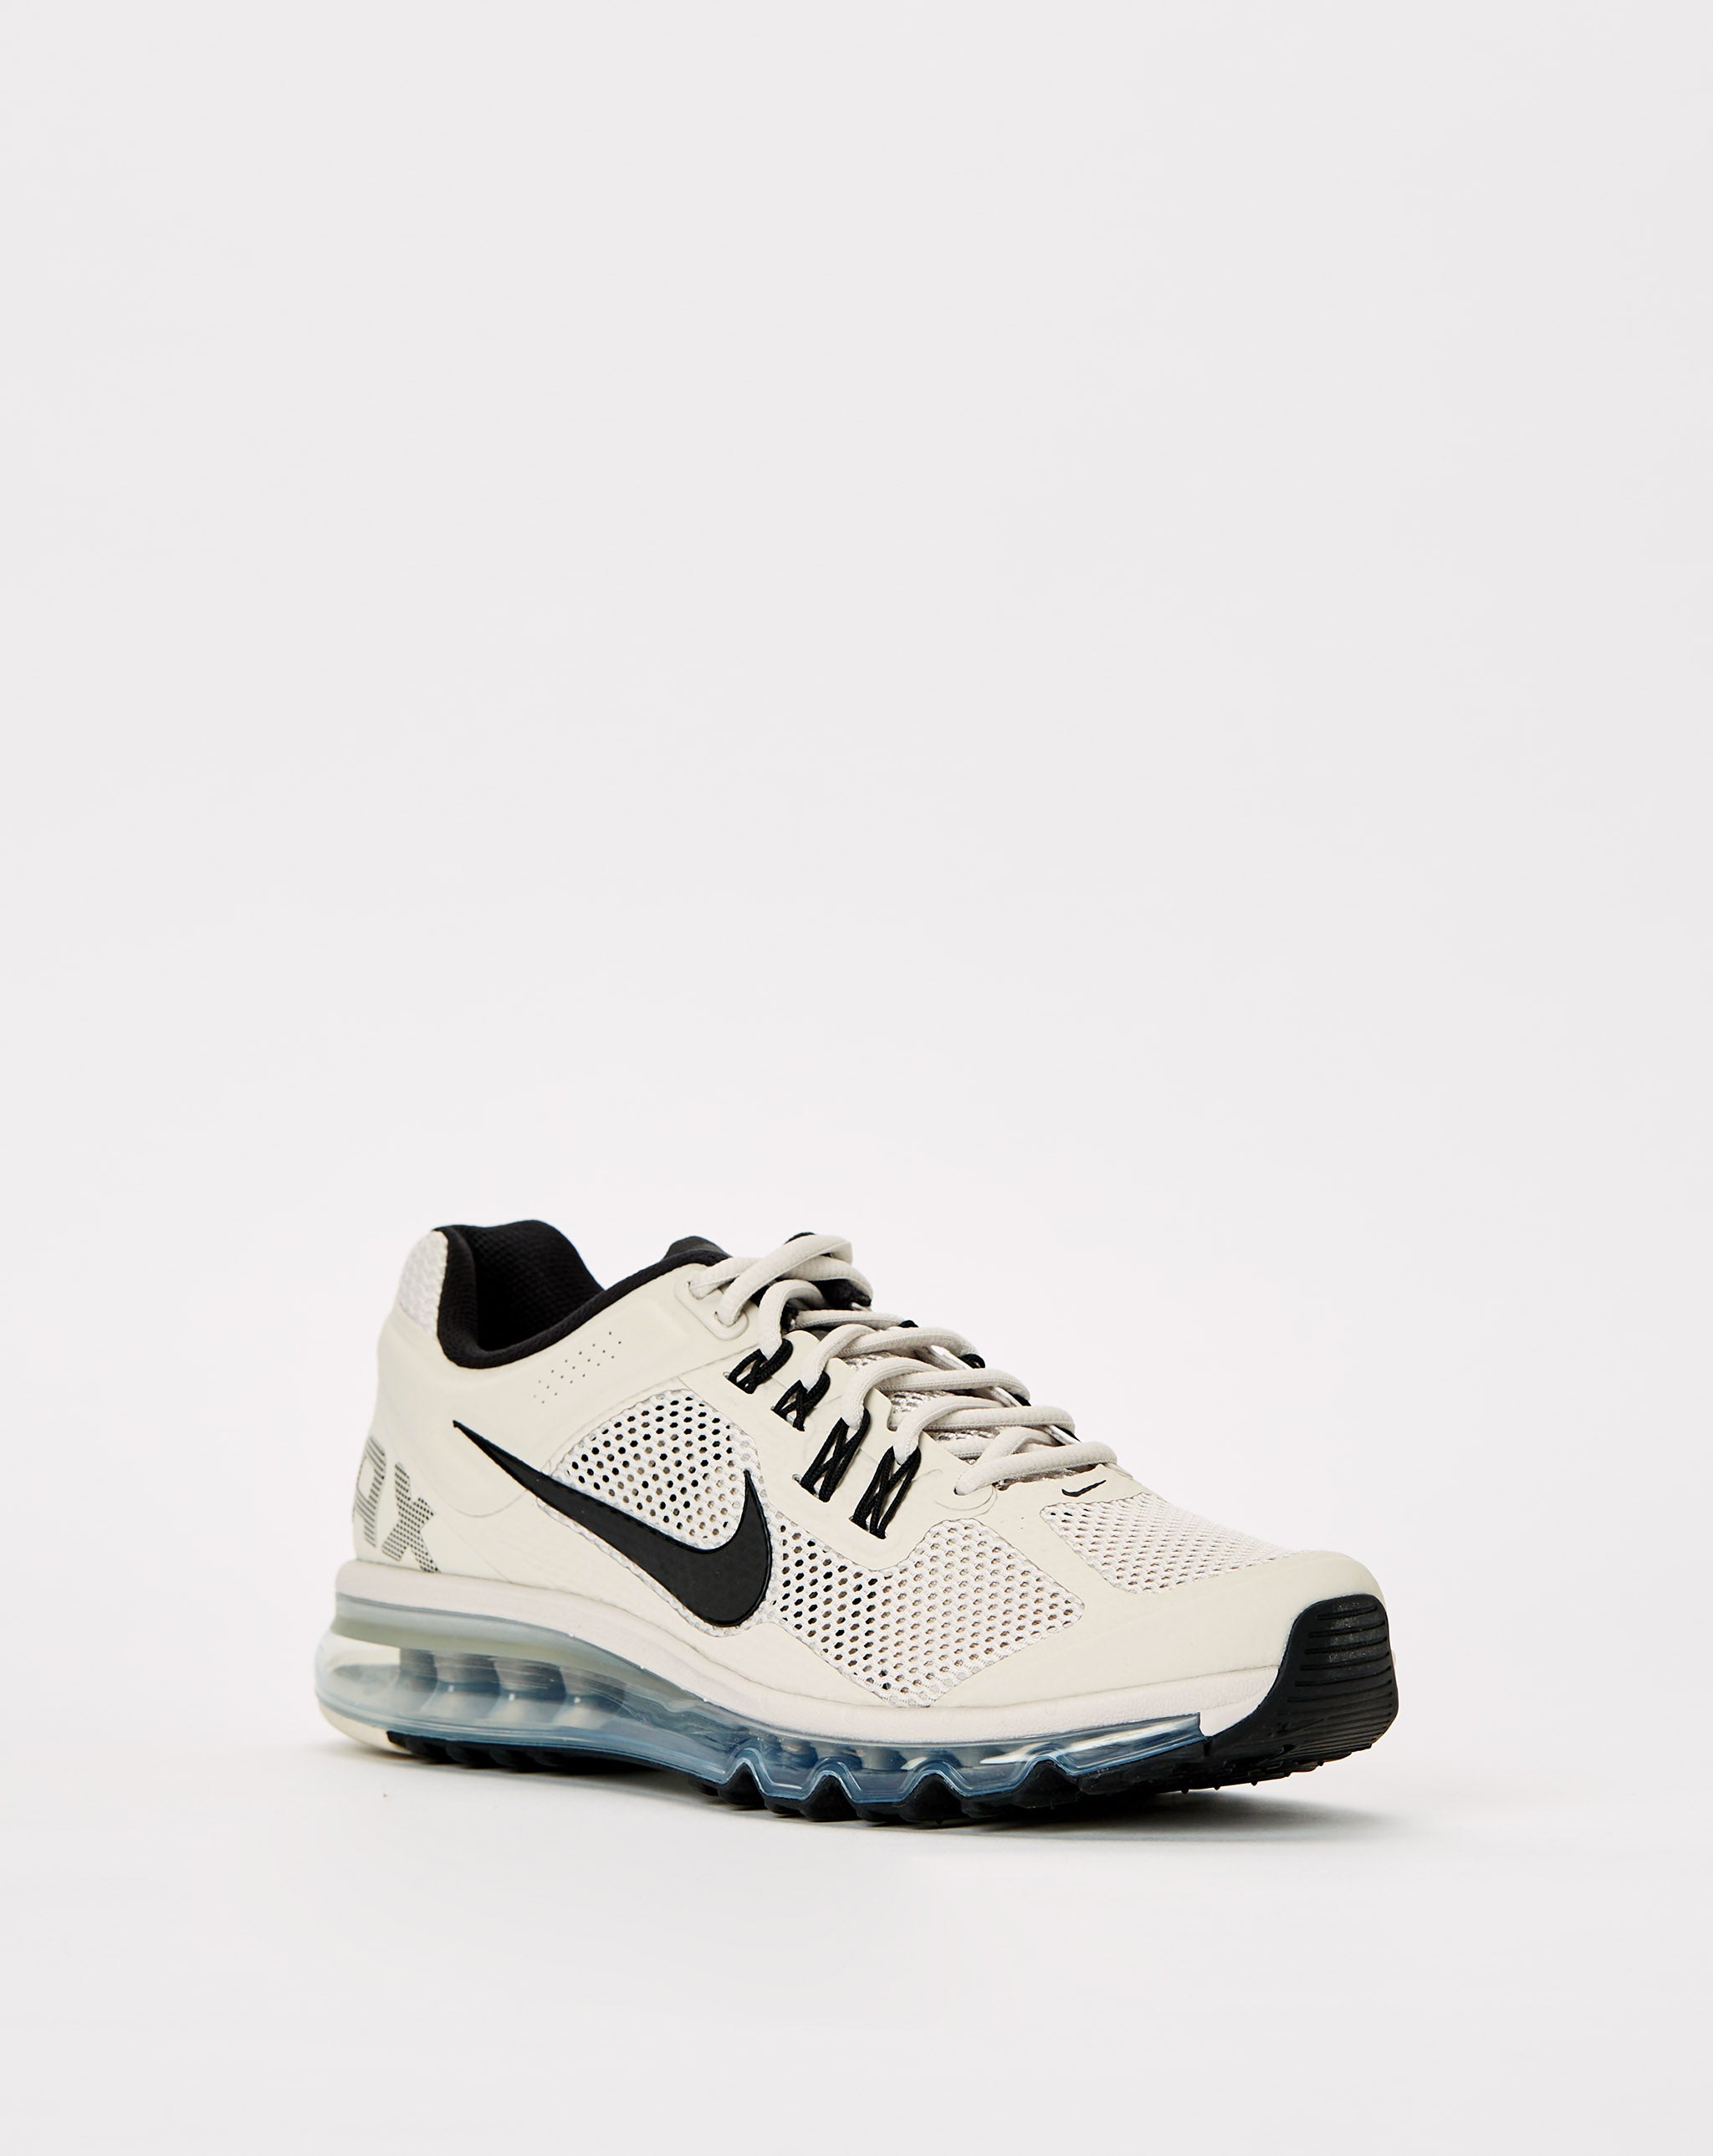 Nike Air Max 2013 - Rule of Next Footwear